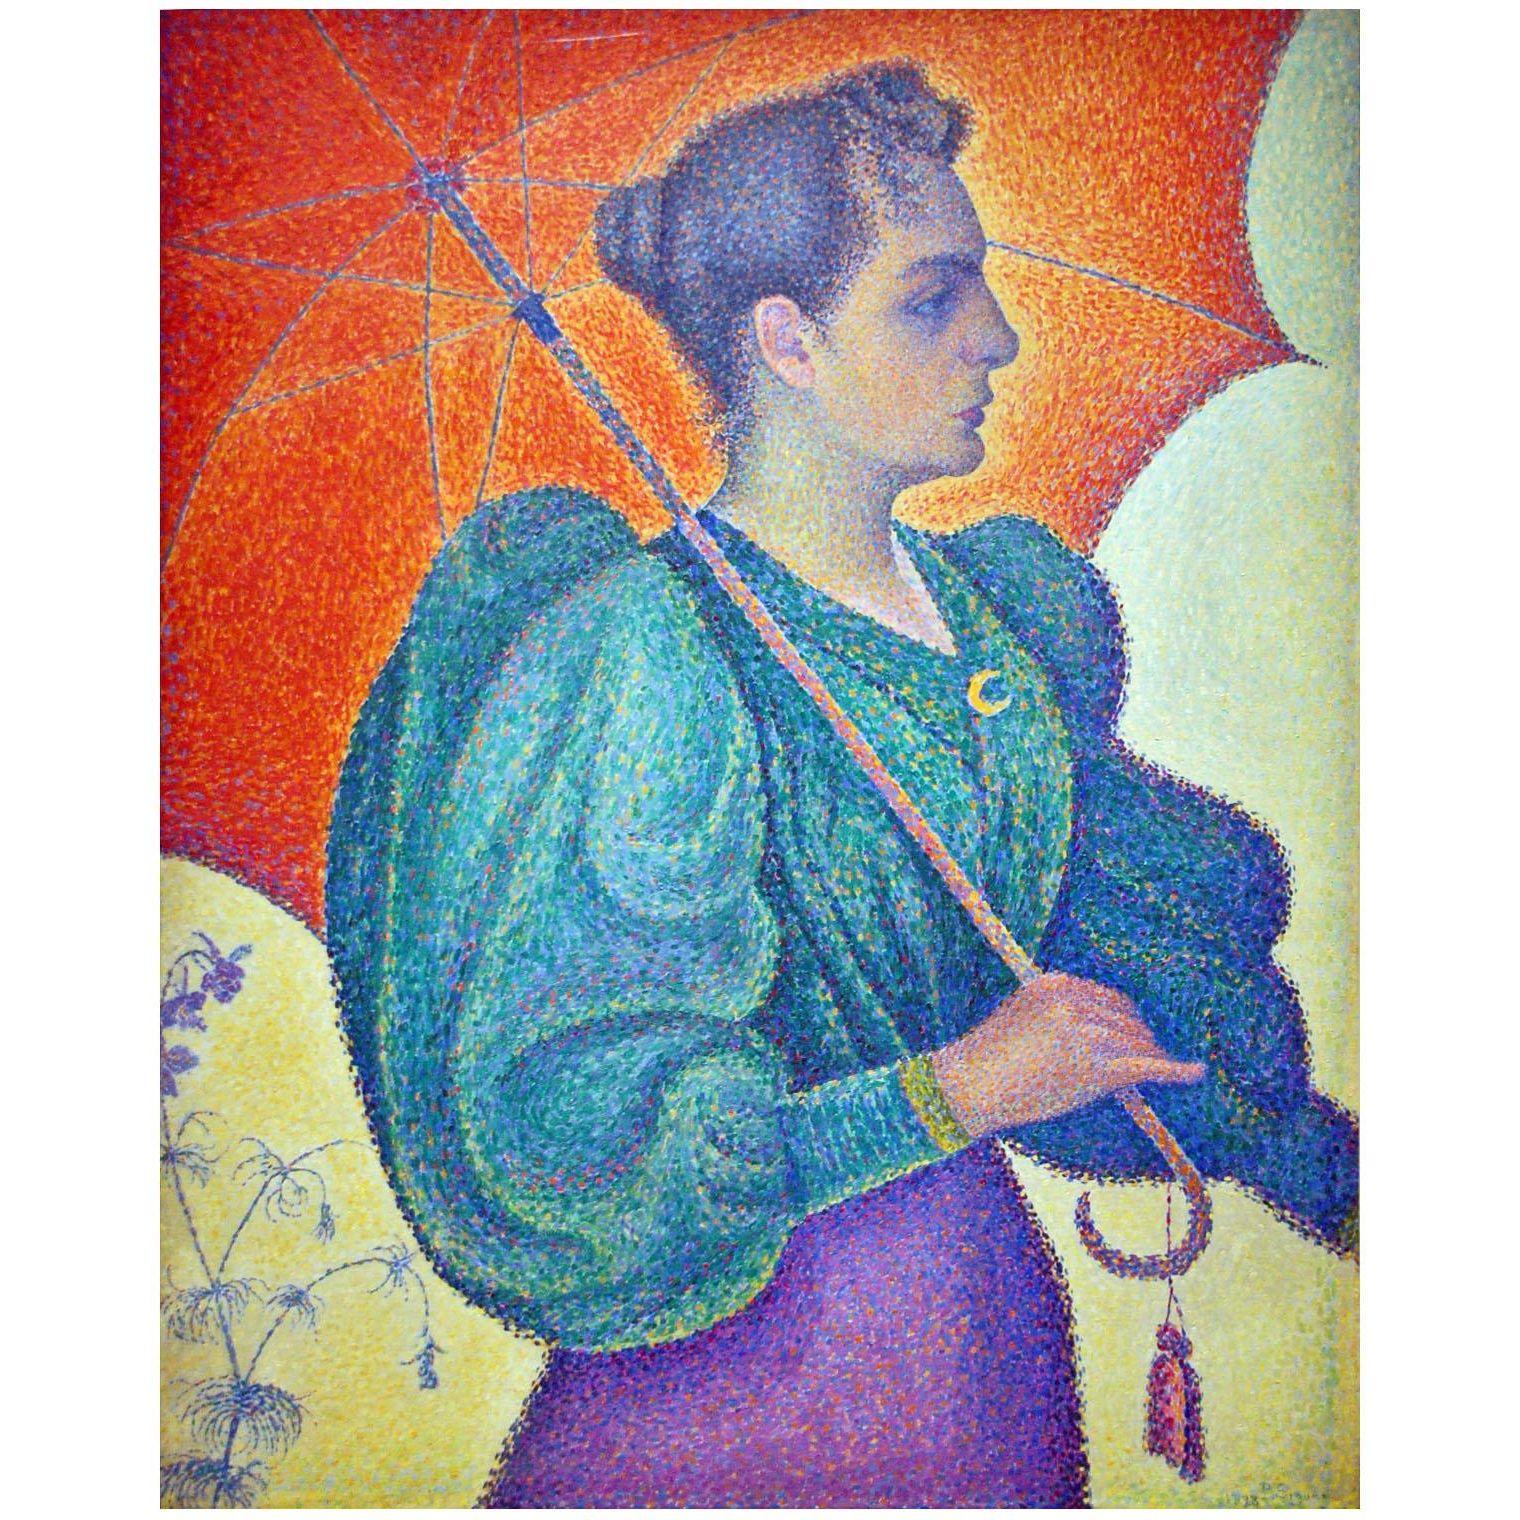 Paul Signac. Femme a l’ombrelle. 1893. Musee d’Orsay Paris